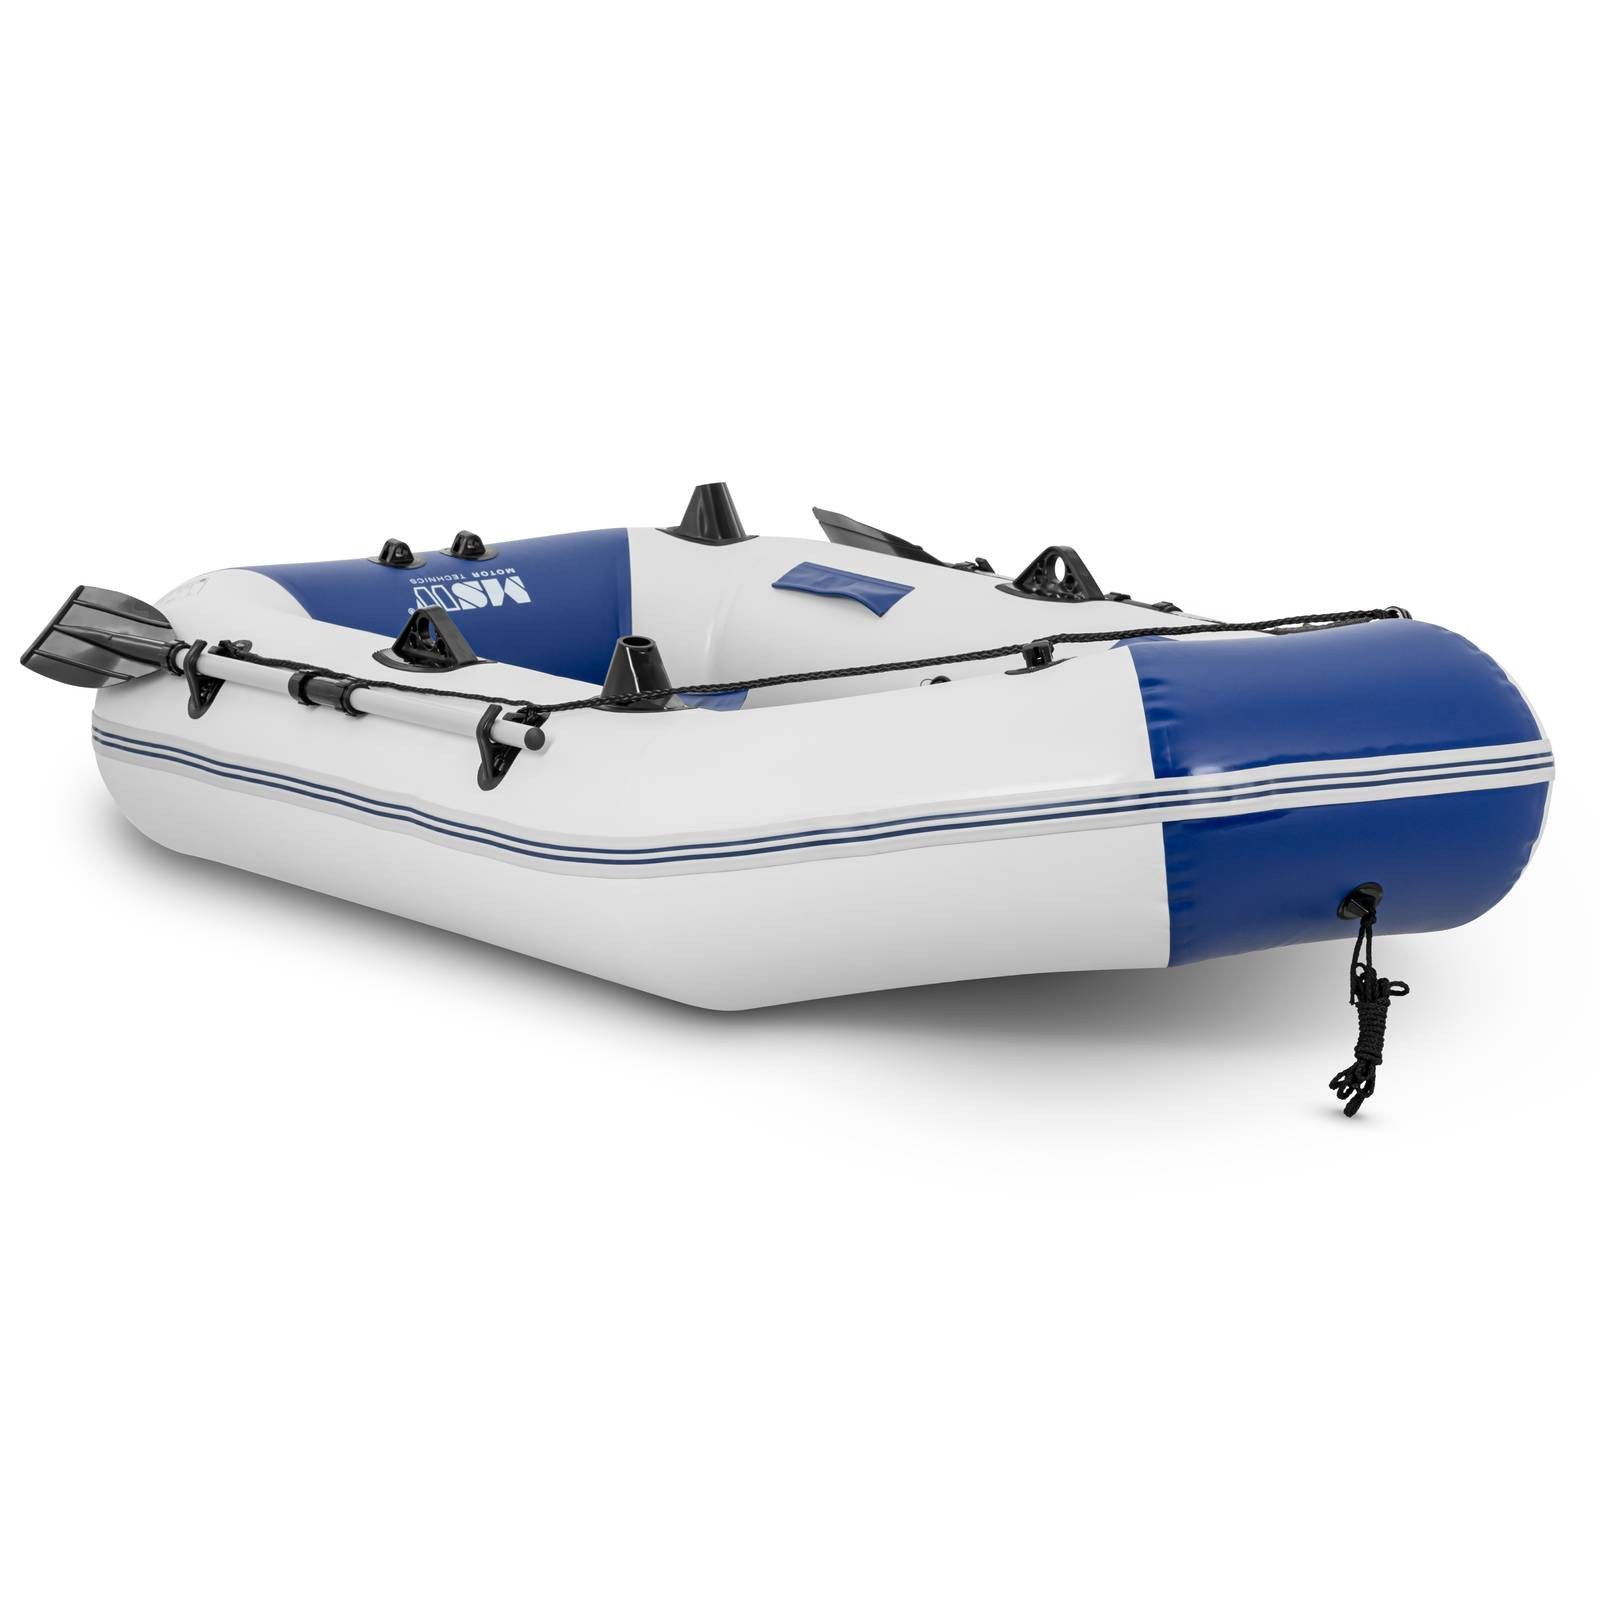 MSW Schlauchboot Schlauchboot Paddelboot aufblasbar blau weiß 235 kg Rutenhalter 3